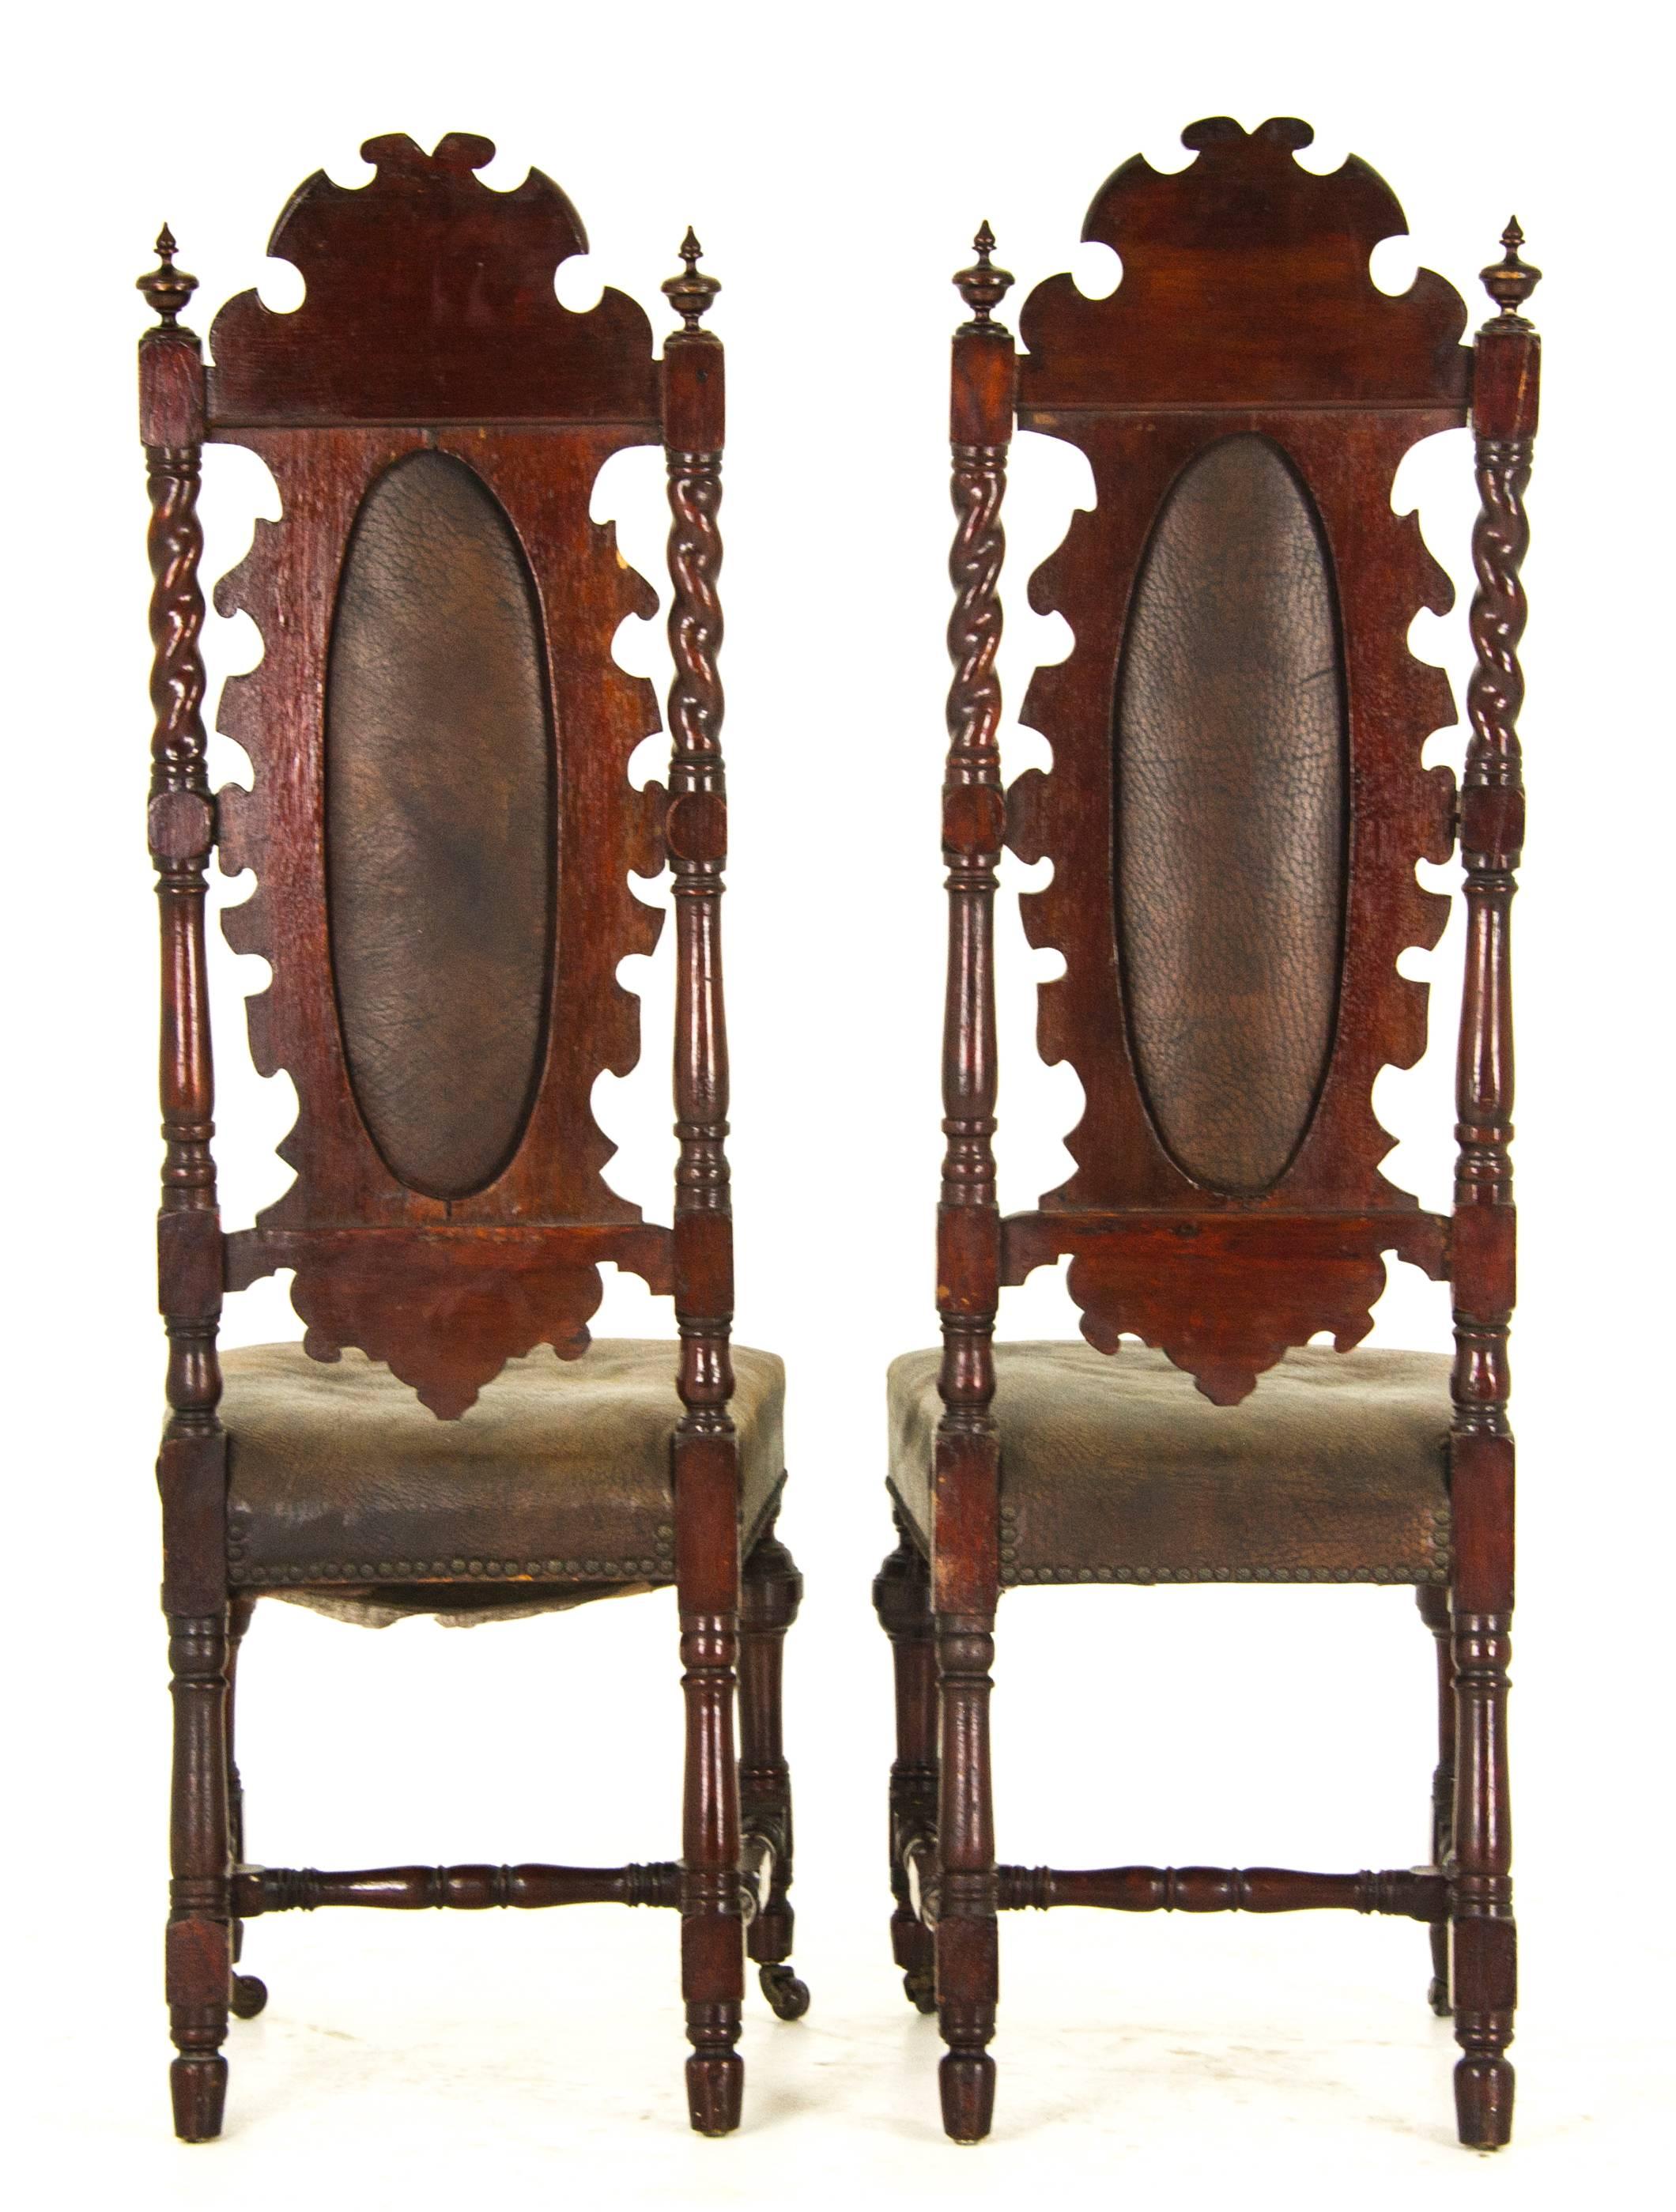 Antique Hall Chairs Renaissance Revival, Scotland, 1880 1